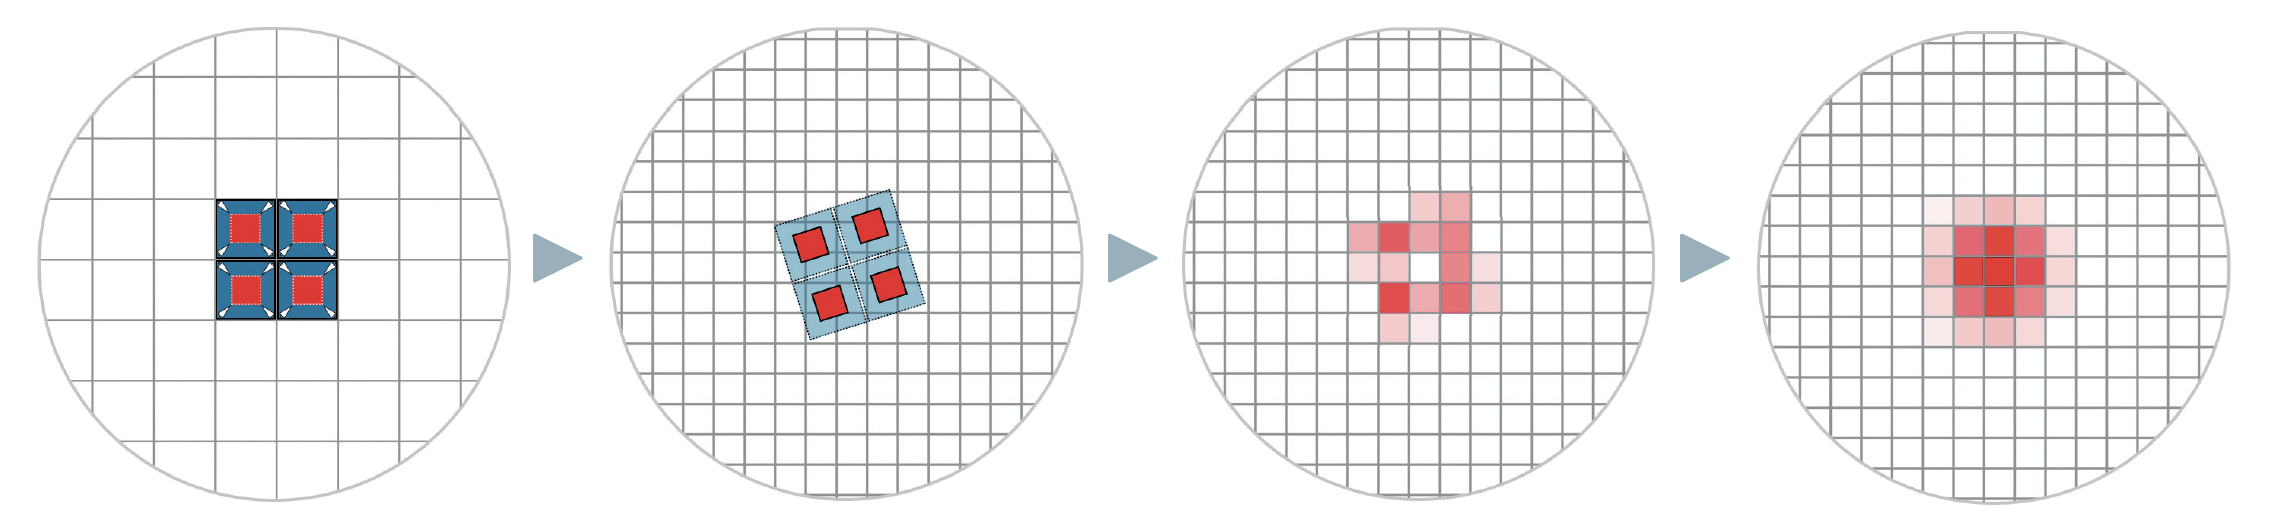 Principiul de funcționare al tehnologiei drizzle: În imaginea din stânga, o stea a aterizat exact la intersecția a patru pixeli, iar valorile luminozității sale sunt distribuite în mod egal pe toți pixelii. Acest lucru face ca steaua să apară pixelată, iar profilul real al acesteia nu este reprodus. Grila originală de pixeli a fotografiei (albastru) este acum micșorată (roșu) și proiectată pe o nouă grilă (a doua fotografie). Noua grilă este mai fină cu factorul 2. În cazul unei singure fotografii, apar evident lacune în unele locuri, după cum se poate observa în distribuția valorilor rezultate în cea de-a treia fotografie. Acesta este motivul pentru care sunt necesare mai multe fotografii cu deplasări mici și variabile. După calcularea mediei, profilul stelelor este acum, în cazul ideal, mai bine afișat (fotografia din dreapta). M. Weigand